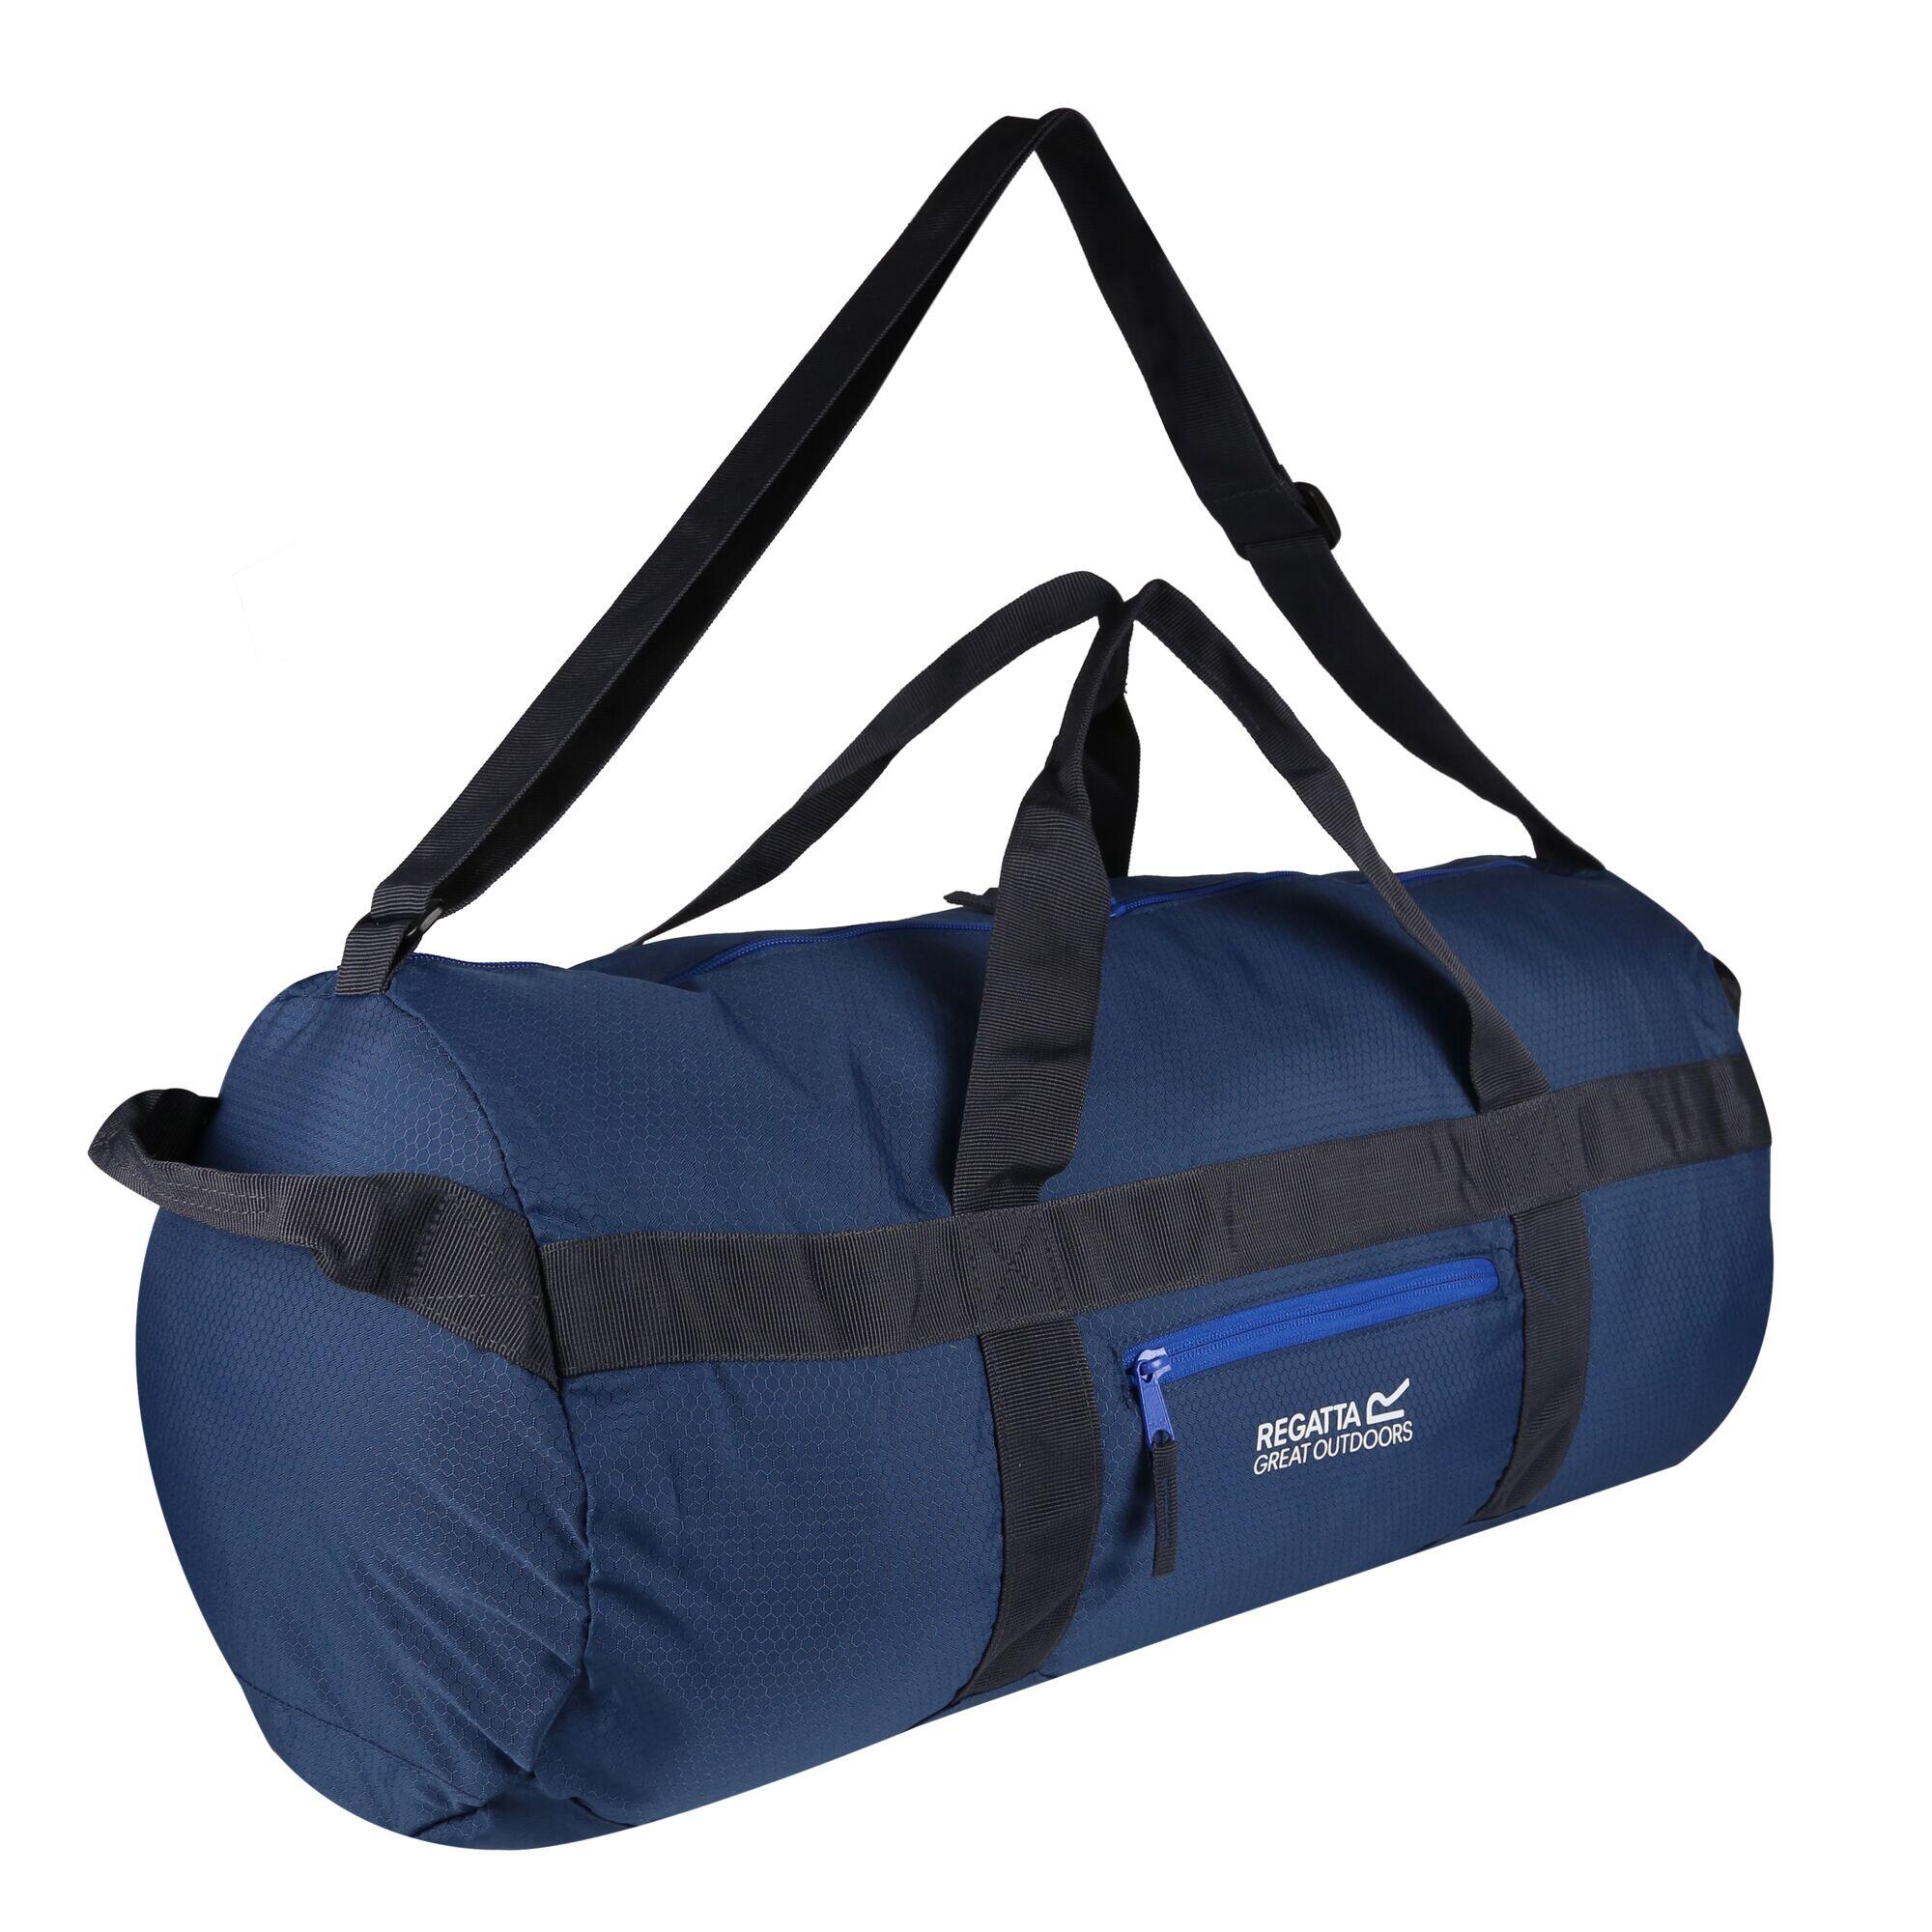 Packaway Duffle Bag (Dark Denim/Nautical Blue) 3/4